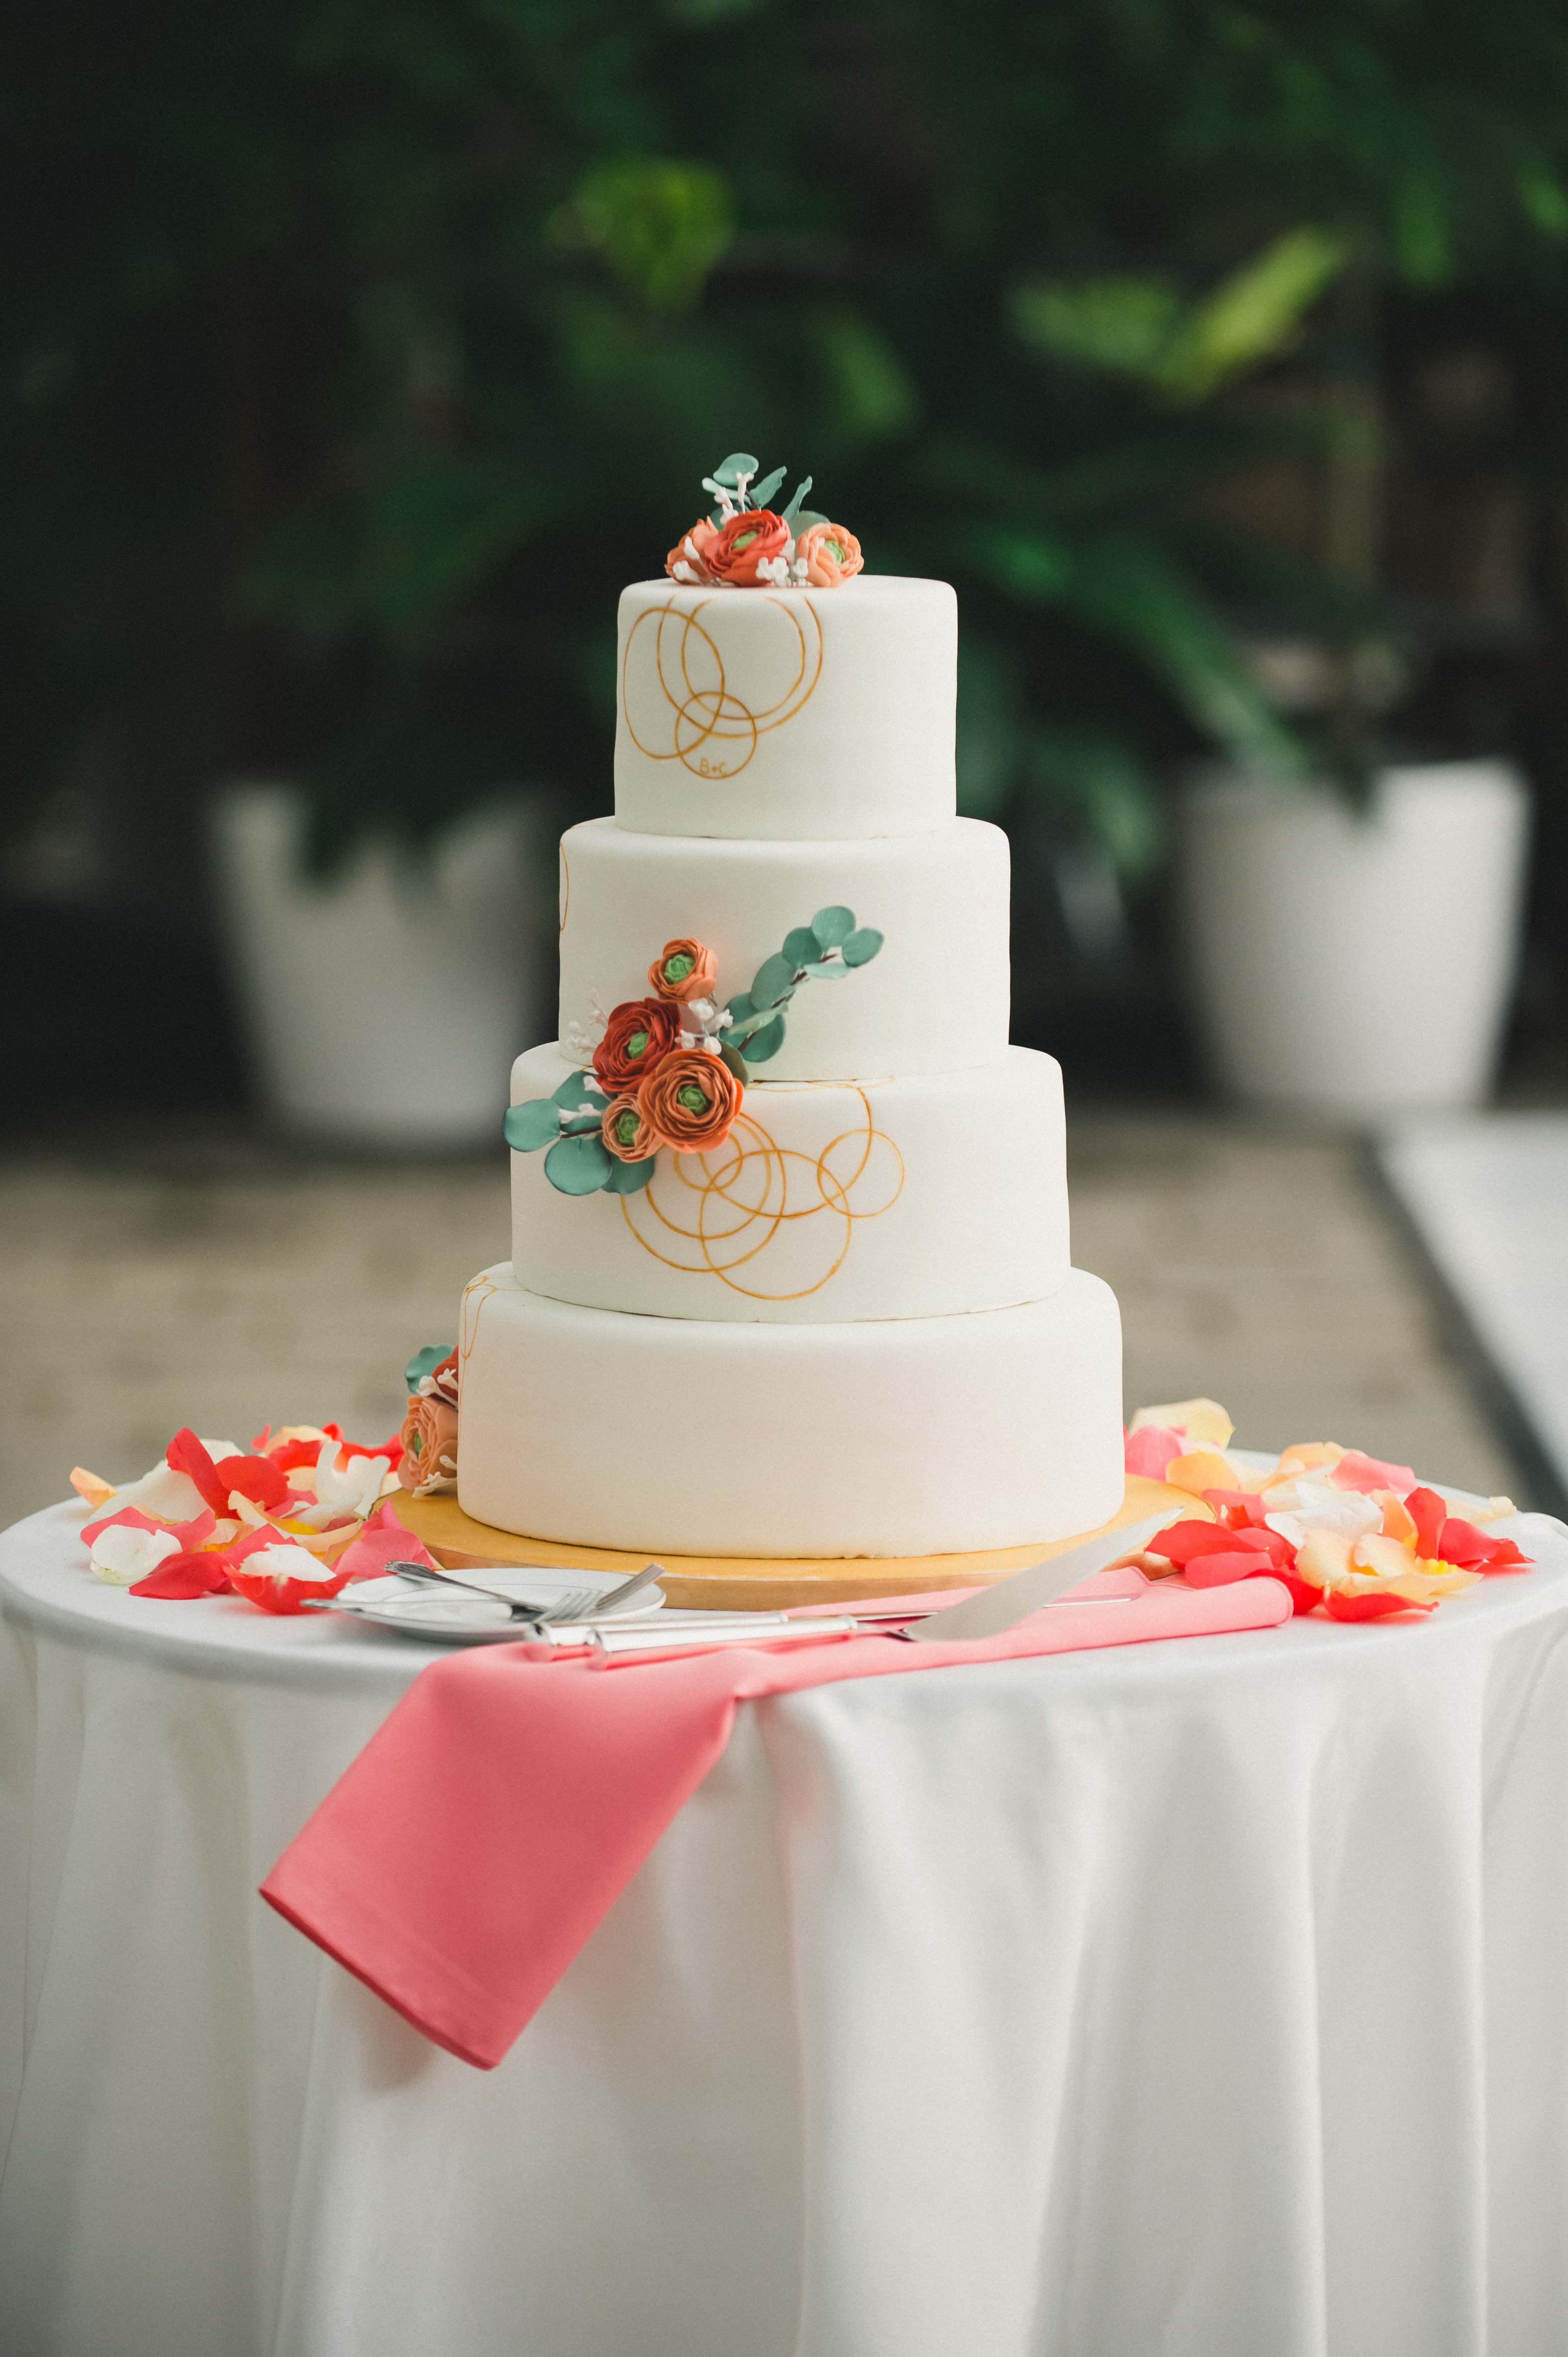 Wedding Cakes Images
 Zingerman s Wedding Cakes Zingerman s Bakehouse